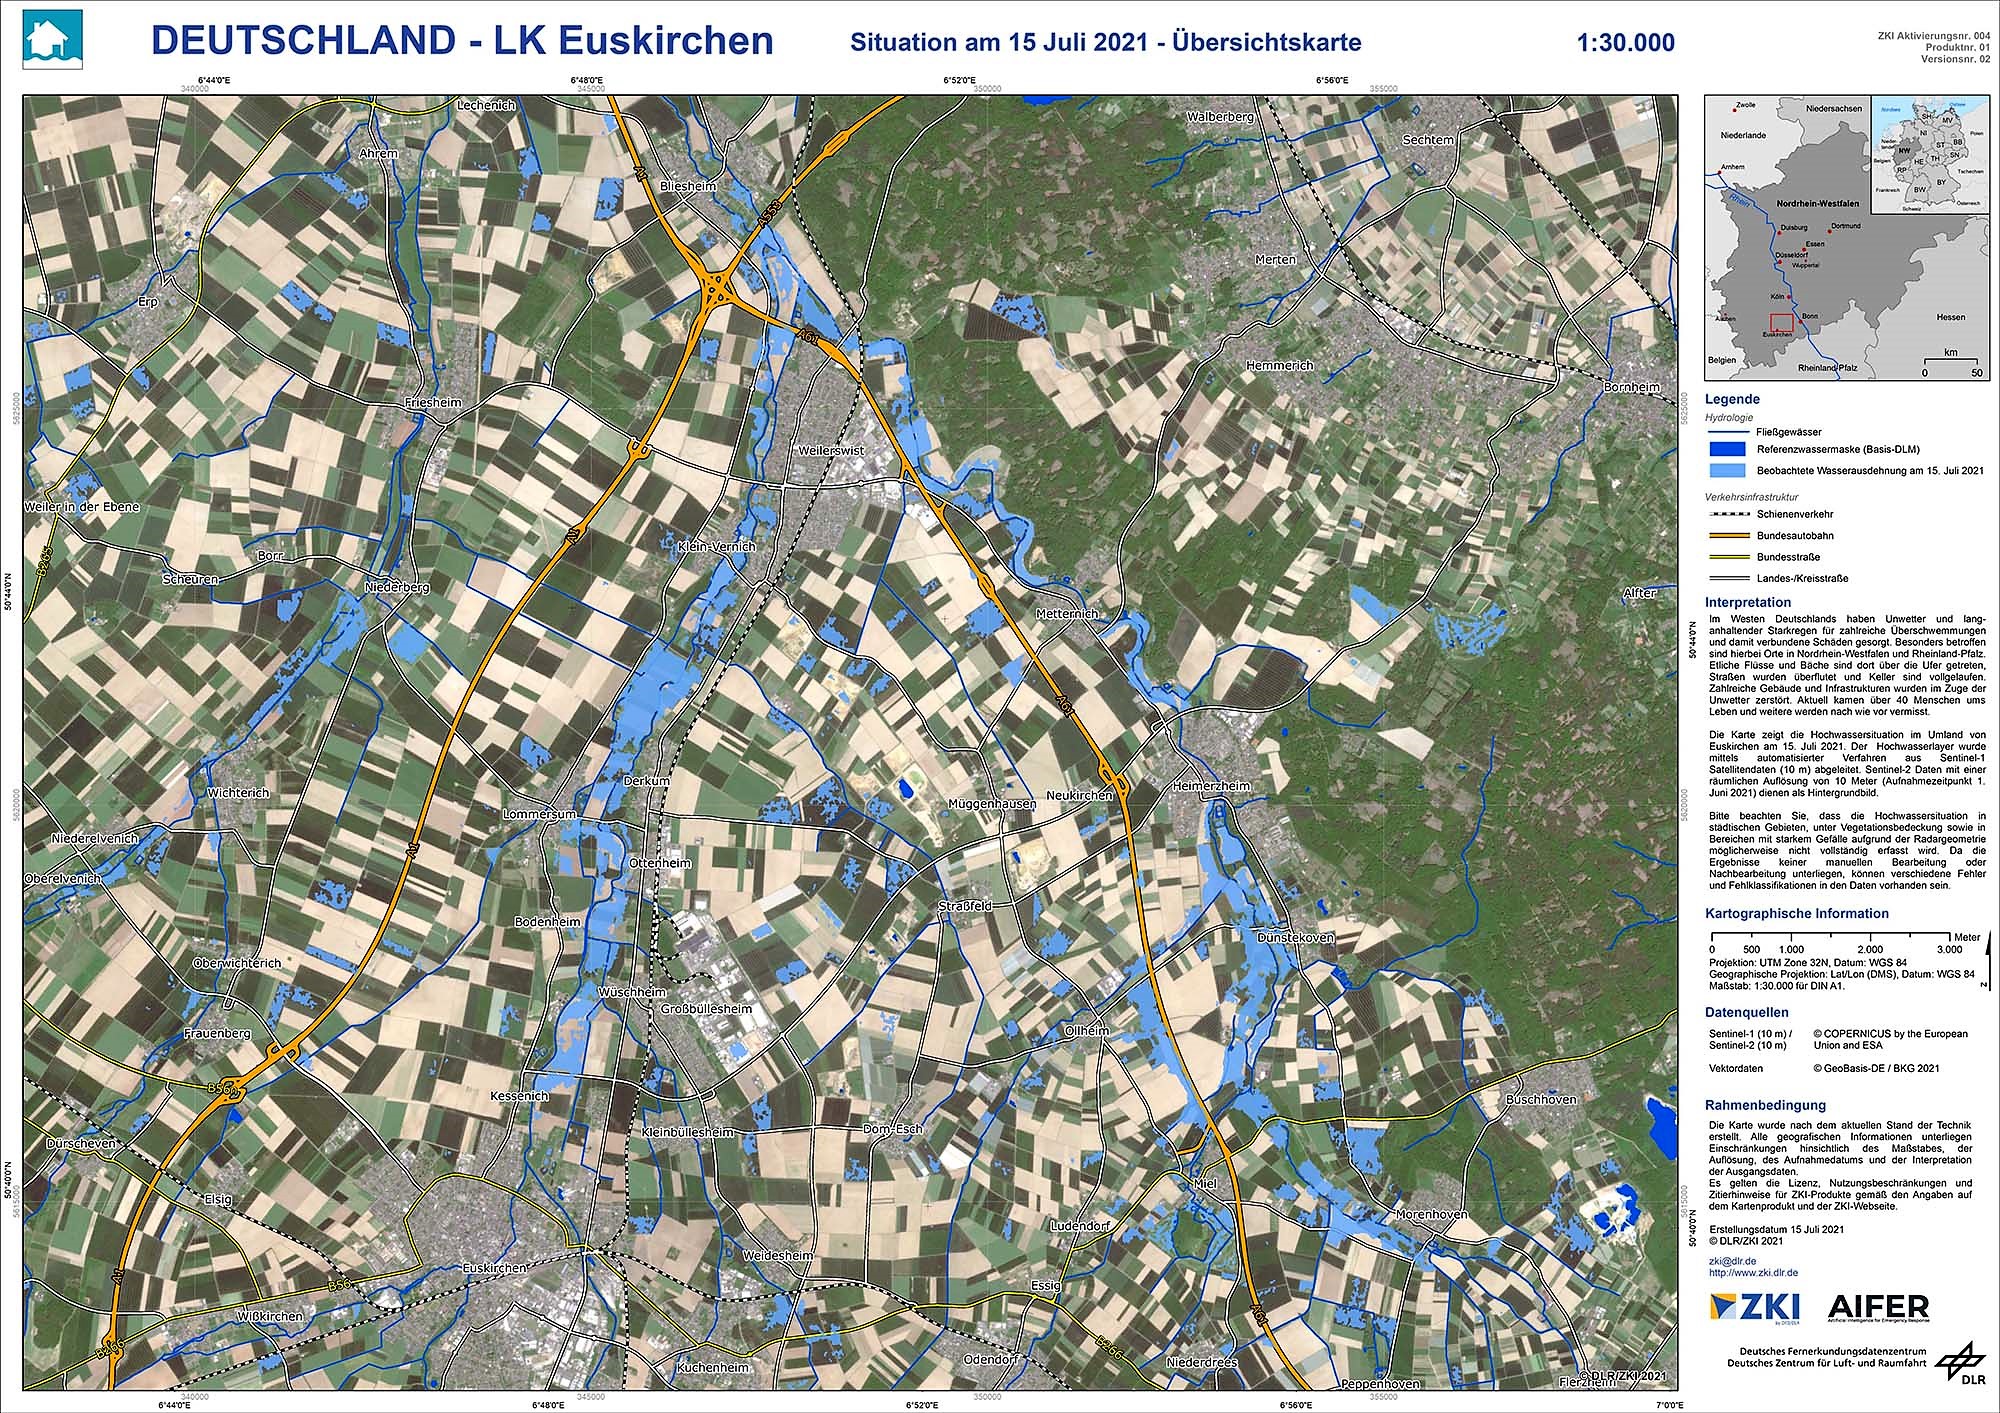 Hochwasserlage Landkreis Euskirchen vom 15. Juli 2021 - Übersichtskarte